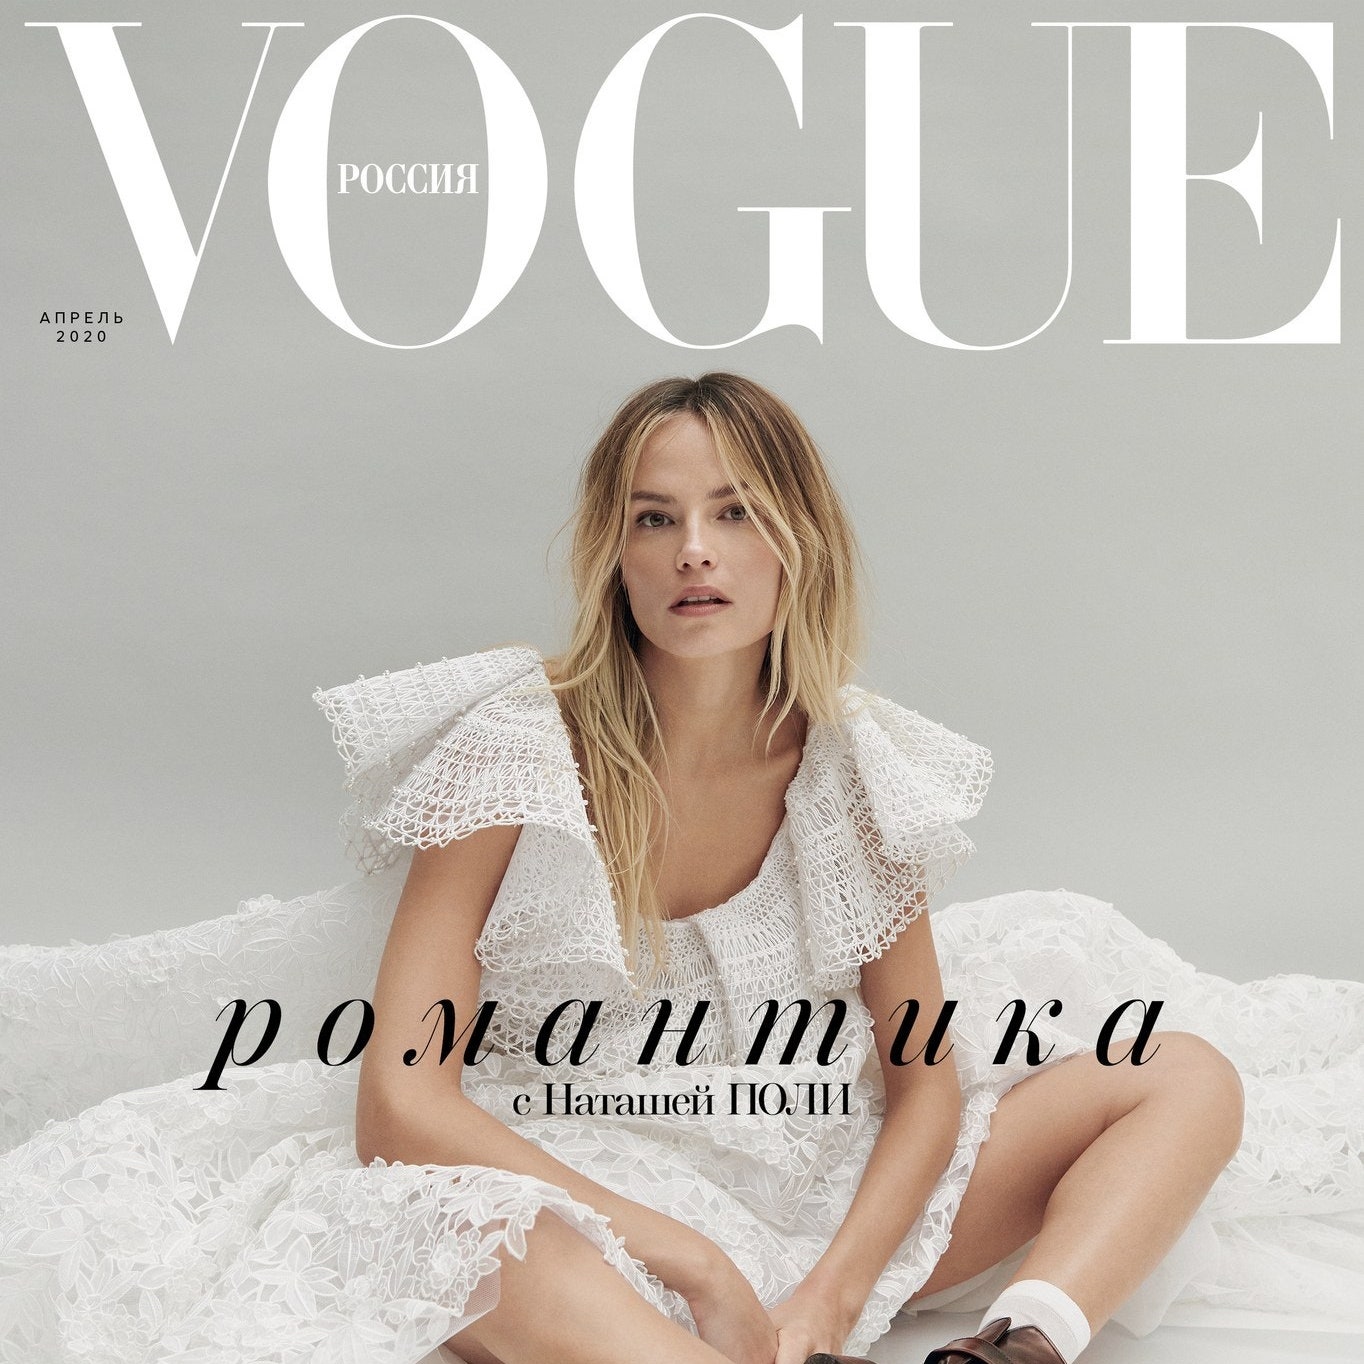 Русский Vogue теперь можно читать бесплатно &- в digital-версии